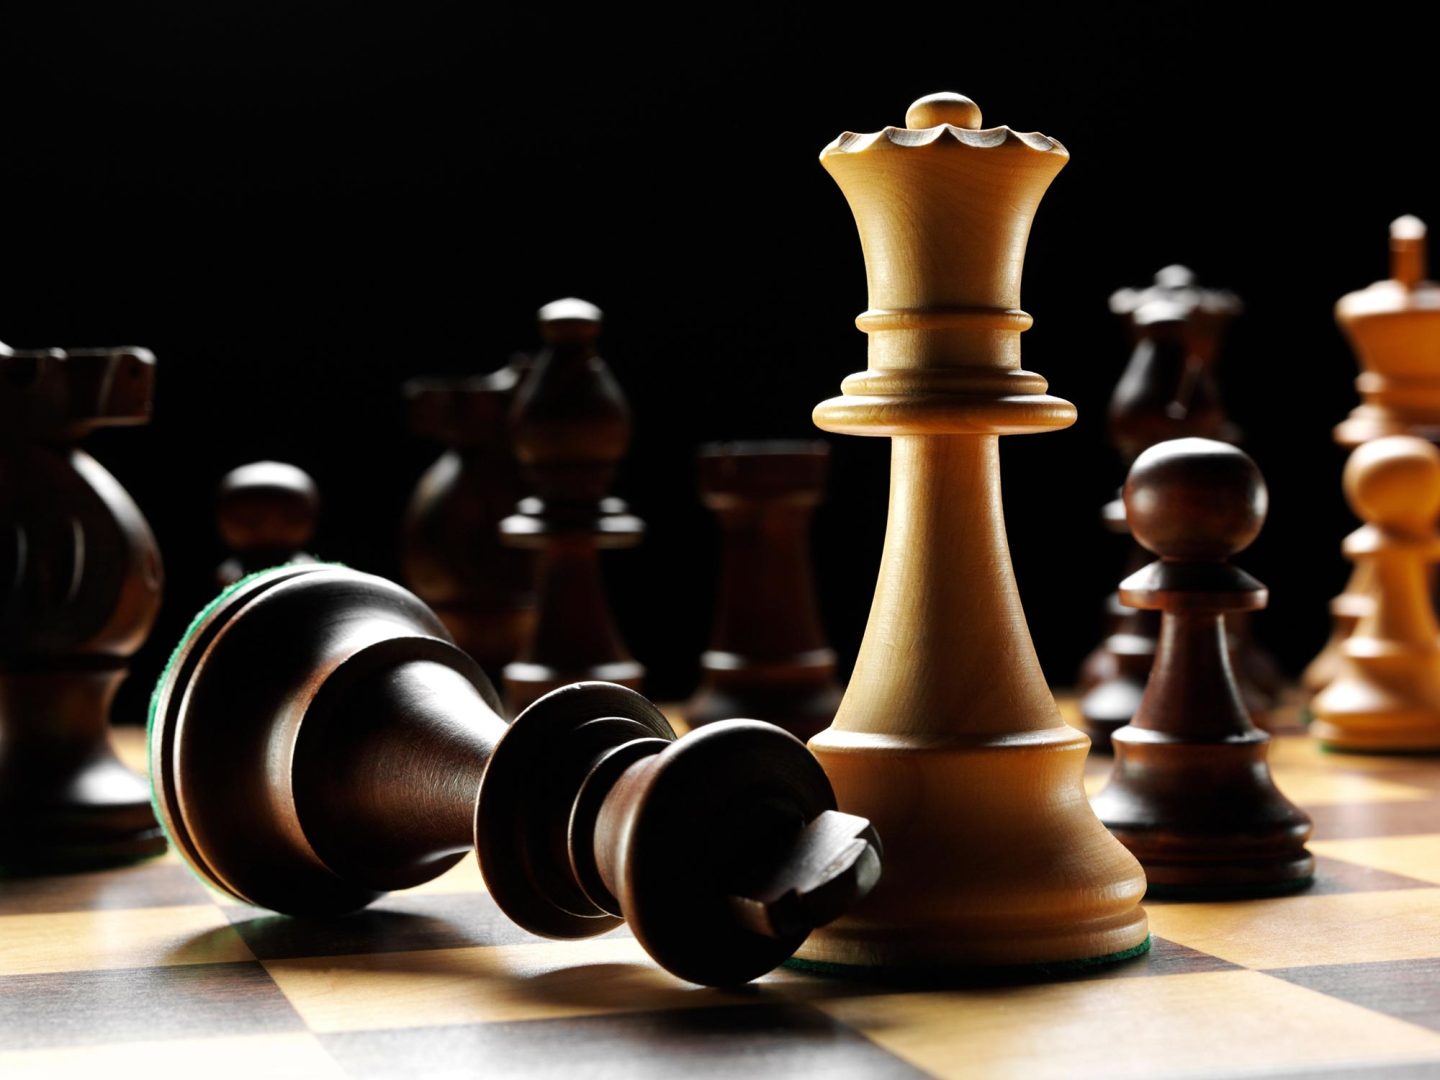 عالم رياضيات يحل مسألة في الشطرنج عمرها 150 عامًا